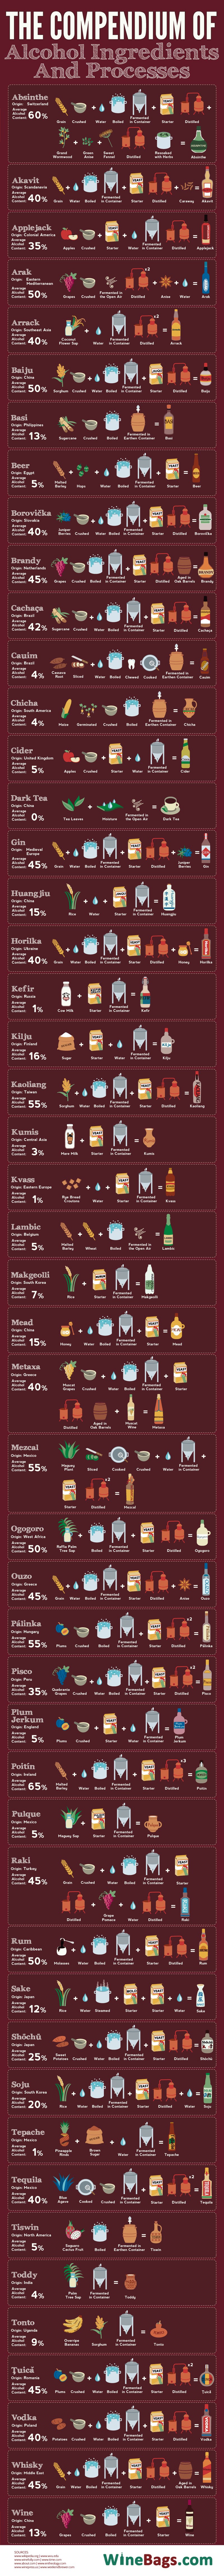 AlcoholingredientsGraphic